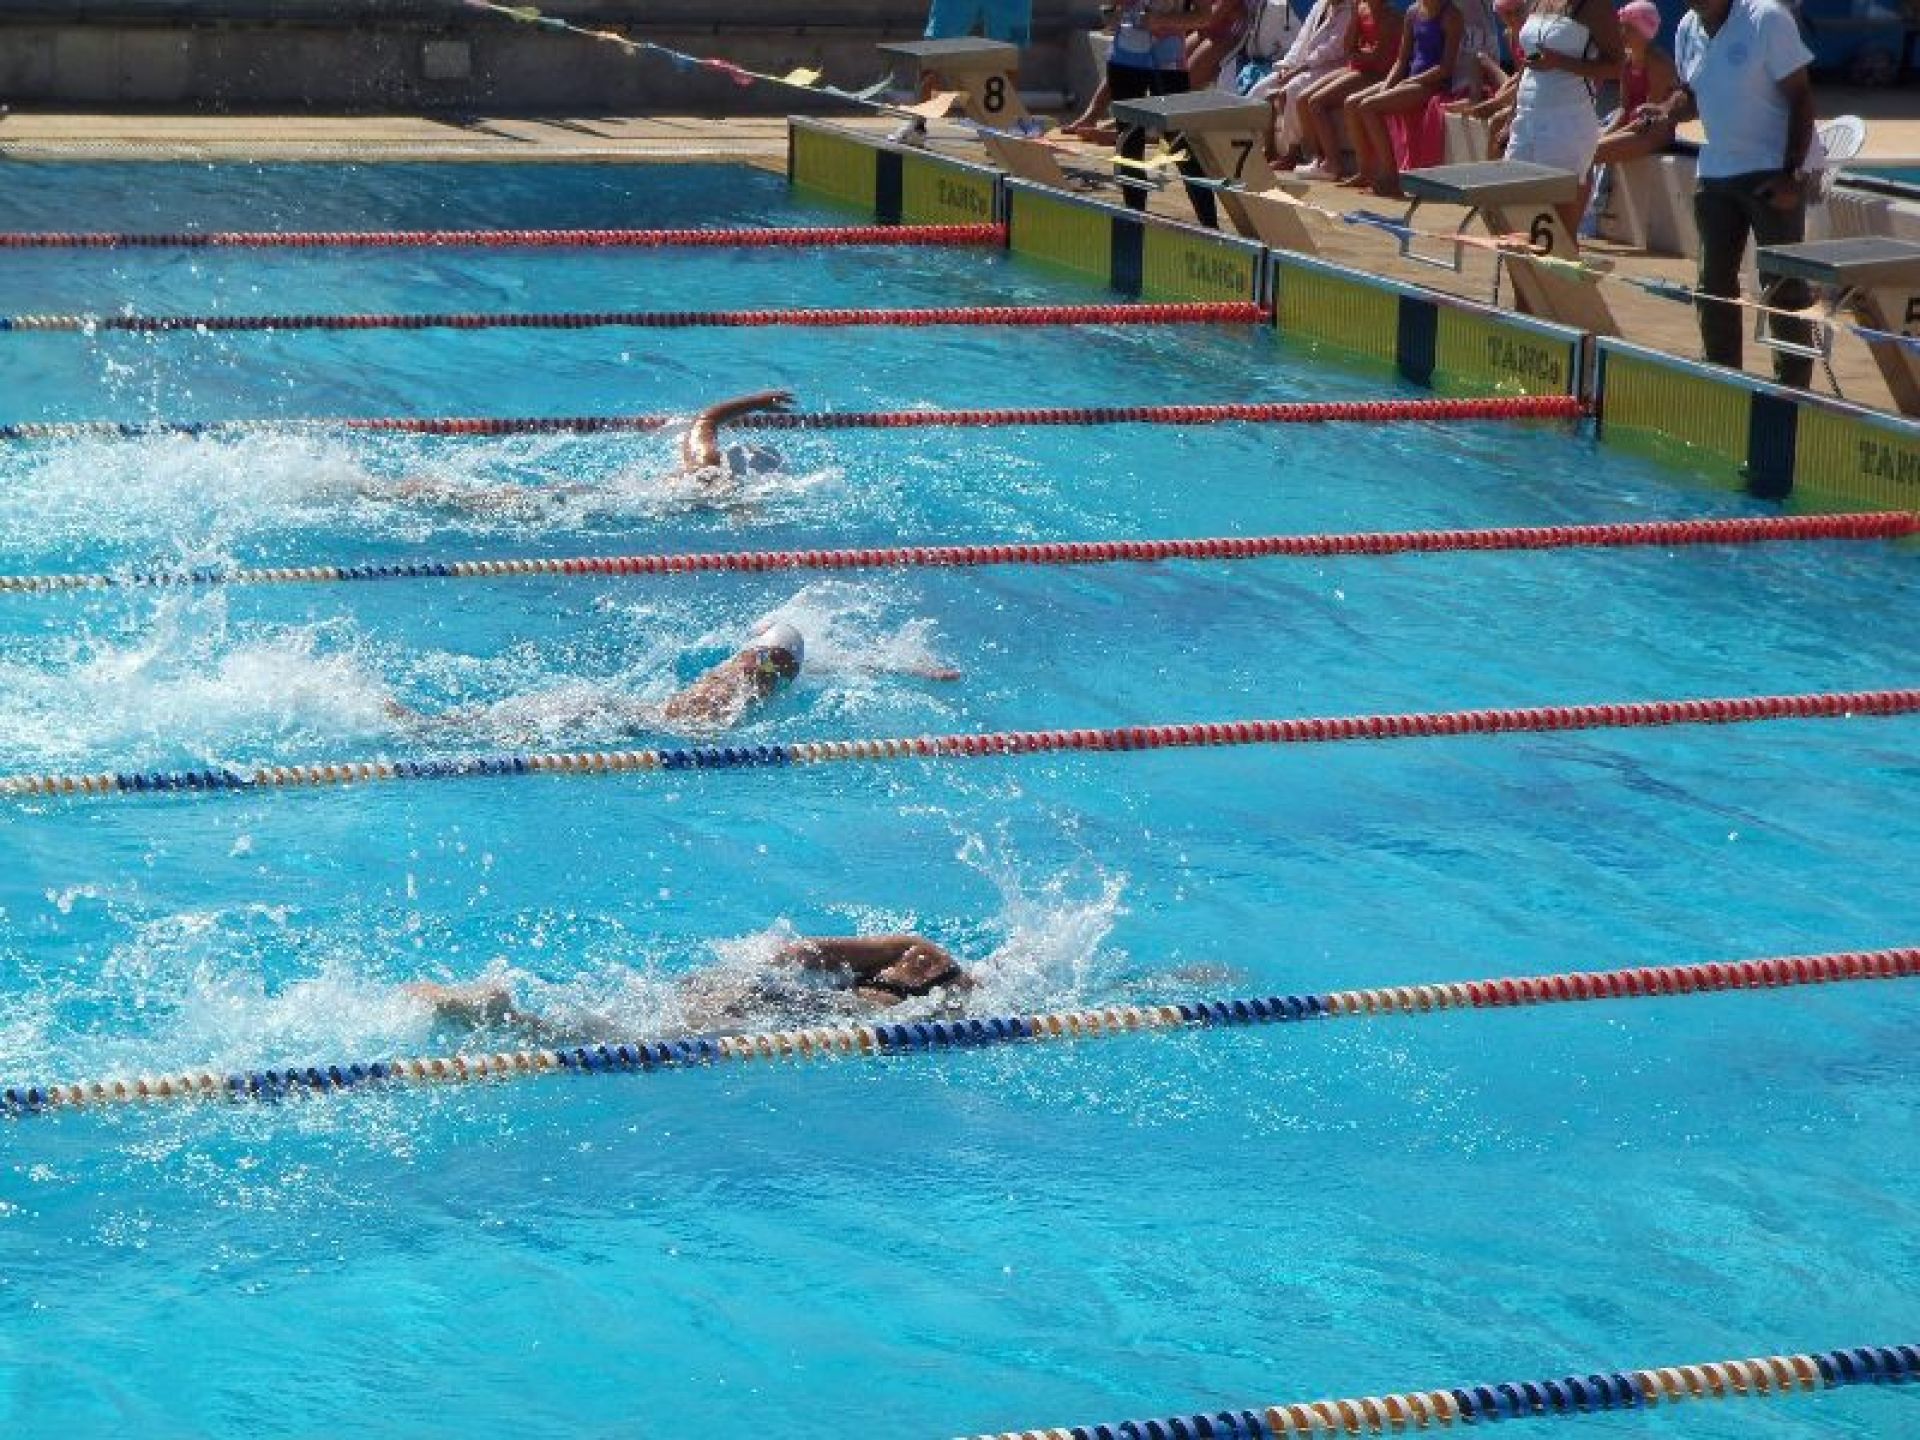 Ν.Ο Σύρου: Ανακοίνωση για το 1ο Syros Swim Cup 2020